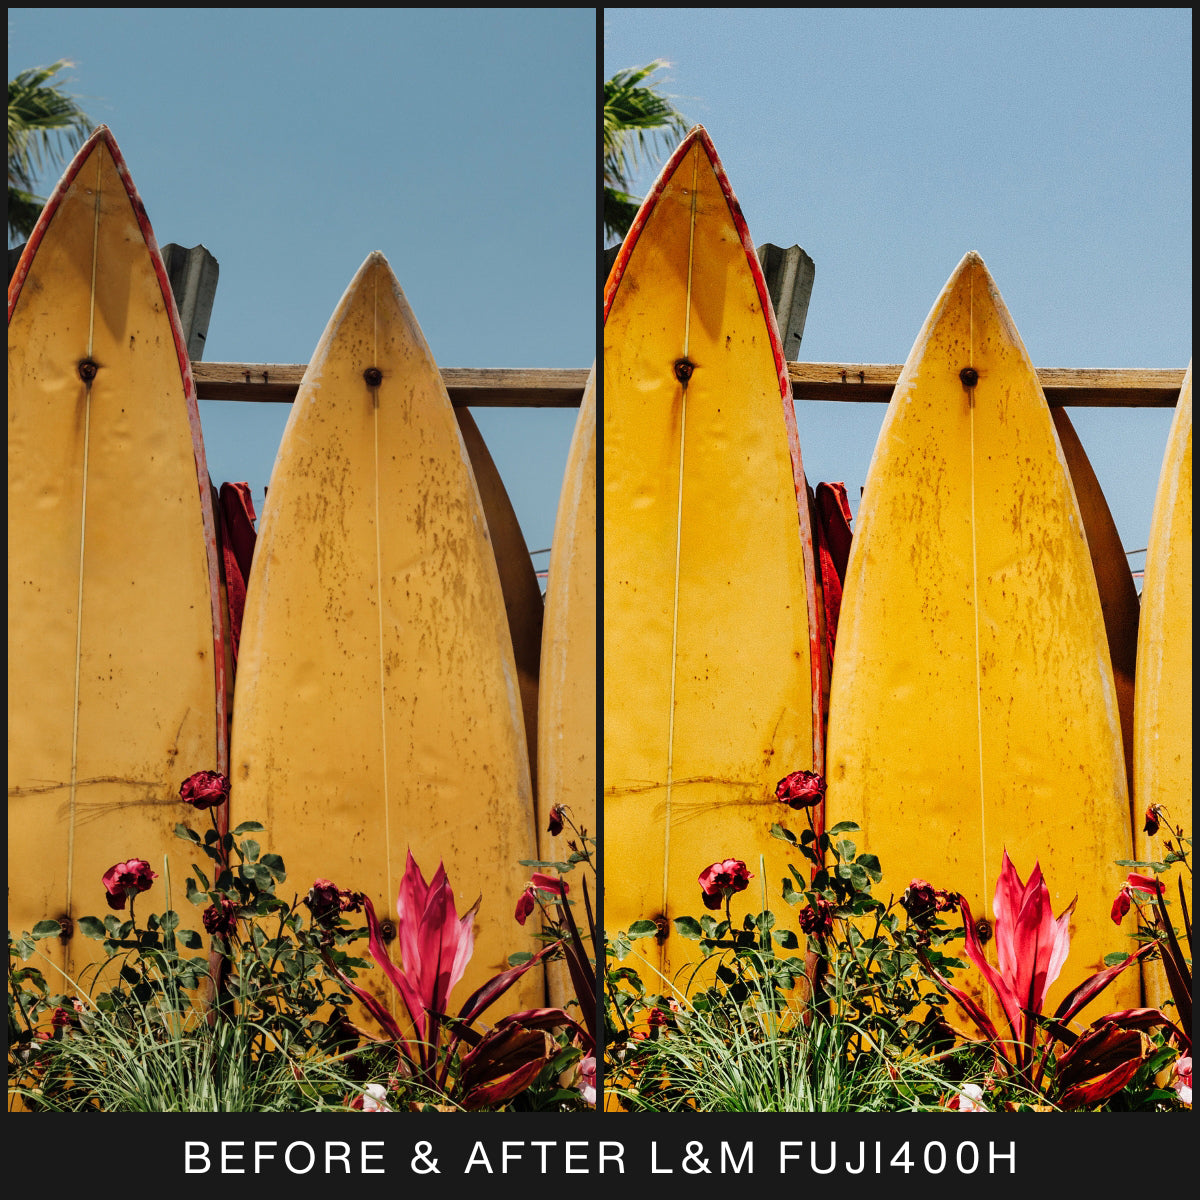  FujiFilm Film Filter Lightroom Presets For Adobe Lightroom Mobile & Desktop By Lou And Marks Presets Fuji